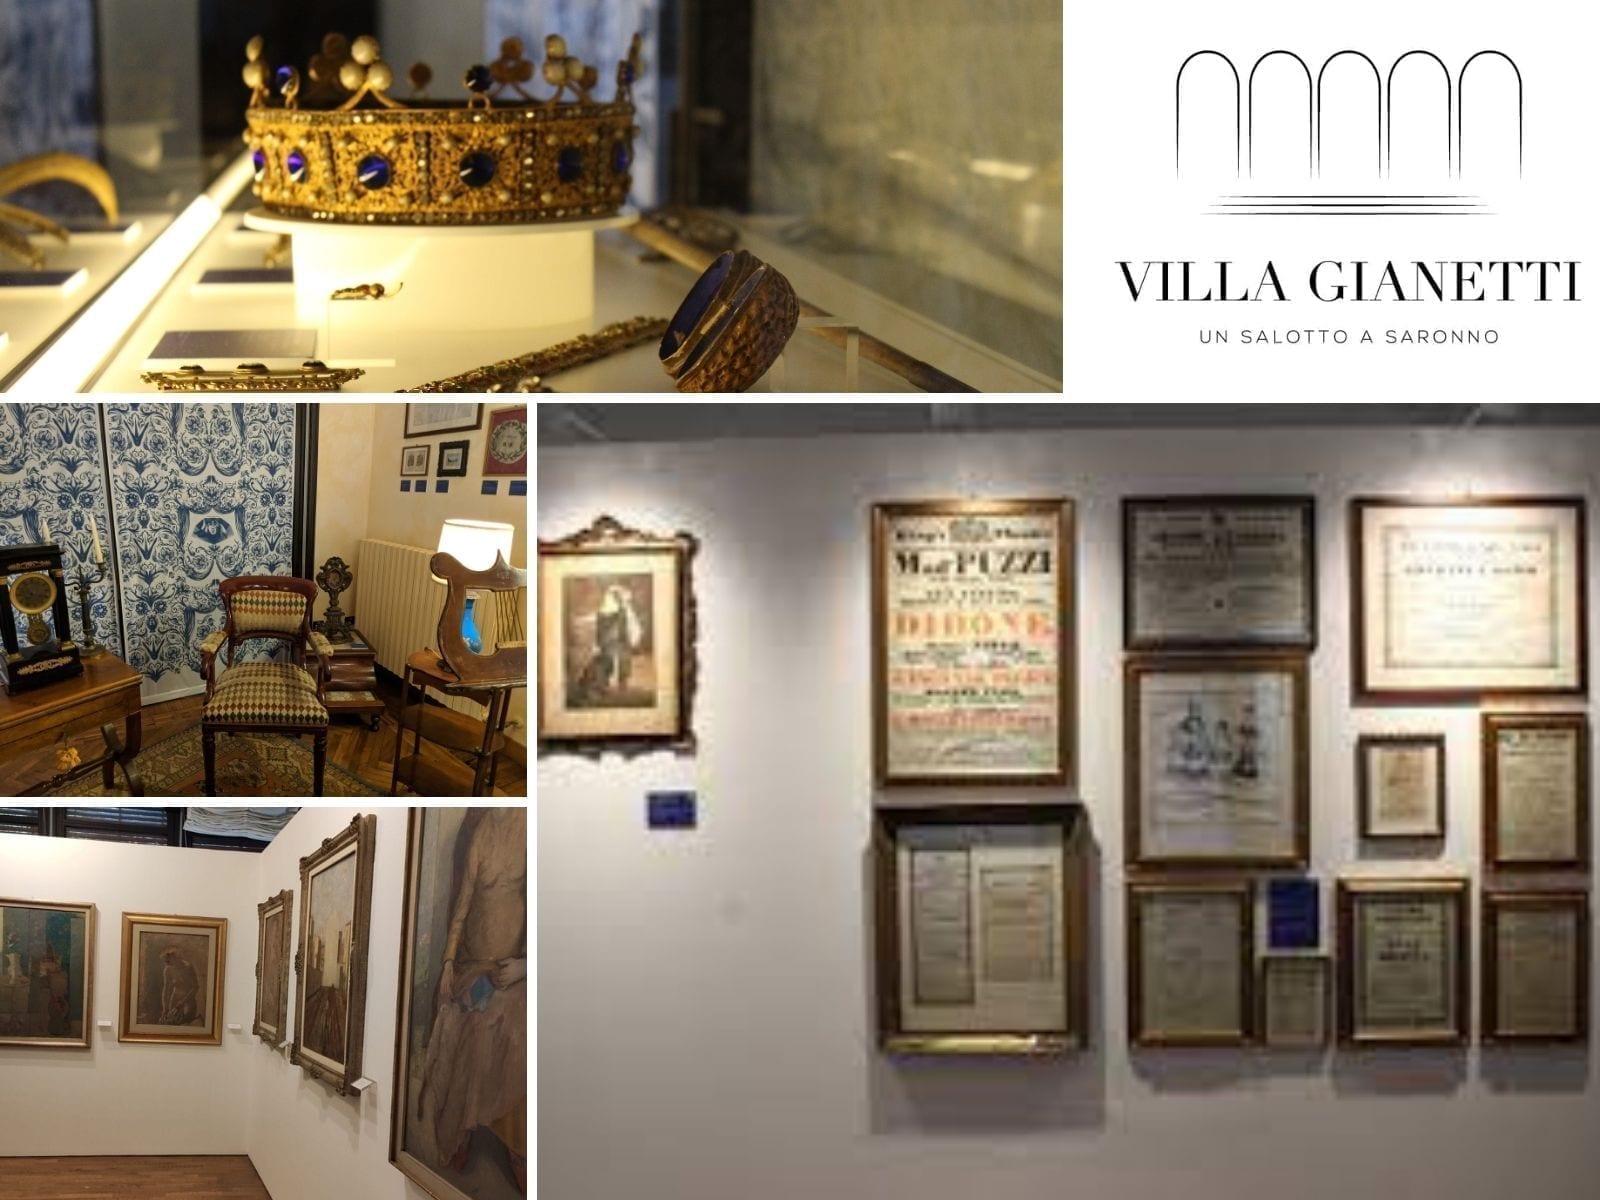 Raccolta museale a Villa Gianetti: le 3 cose da sapere sul nuovo “salotto di Saronno”